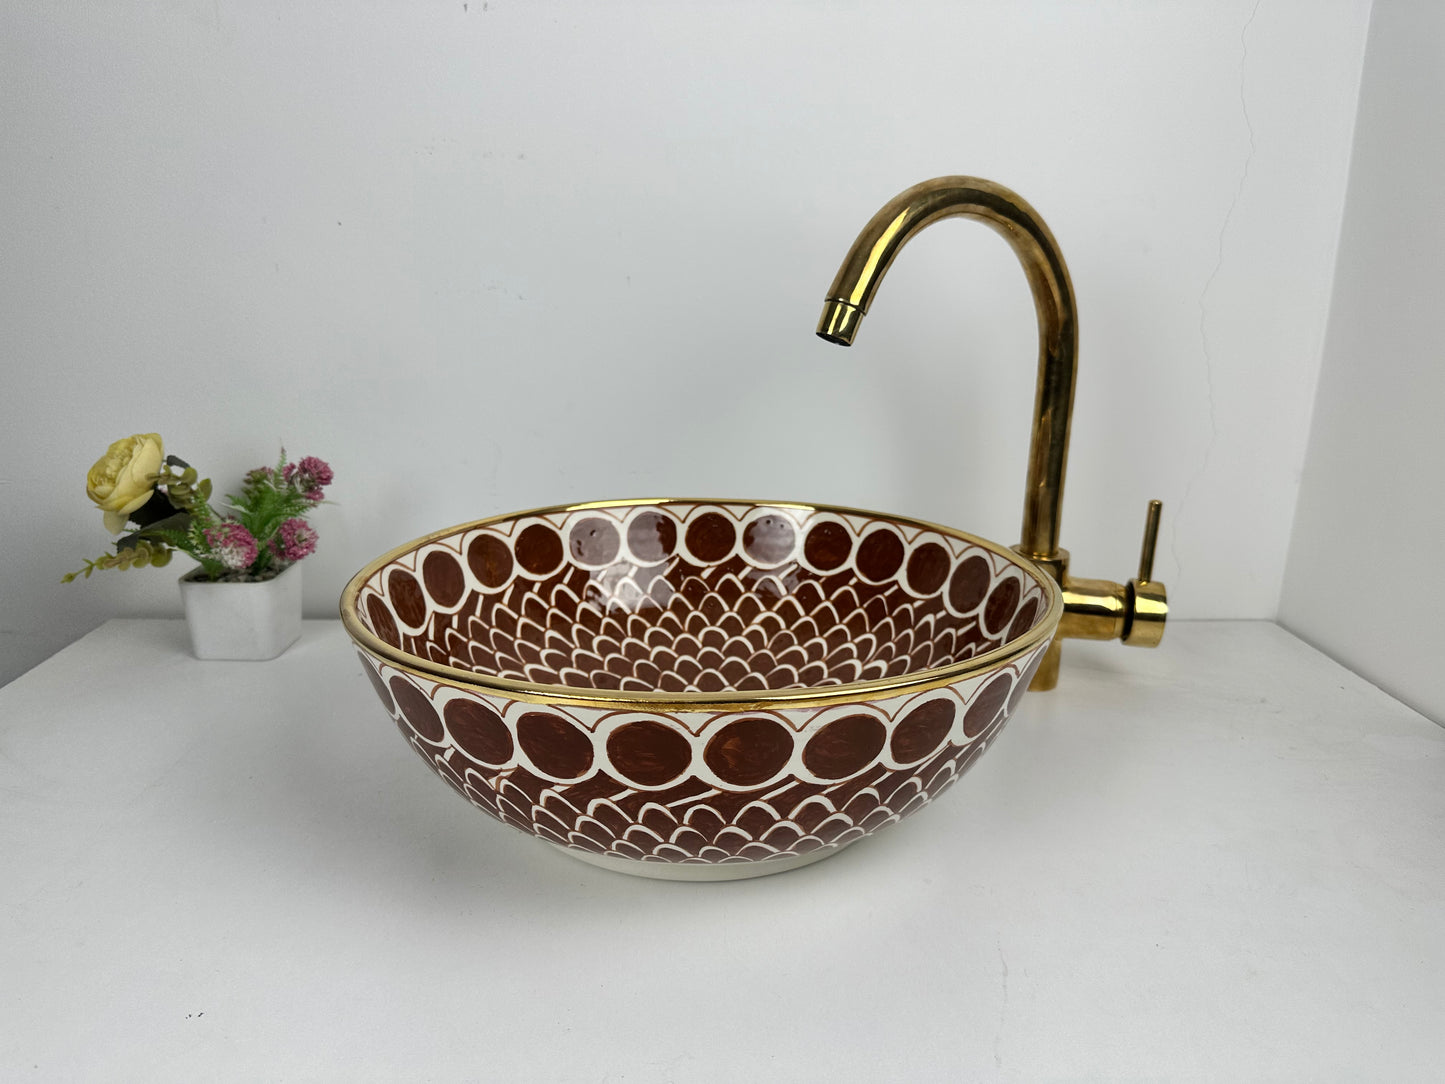 14K gold Sangria Splendor: Handcrafted Ceramic Sink in Rich Sangria Hue with 14K Gold